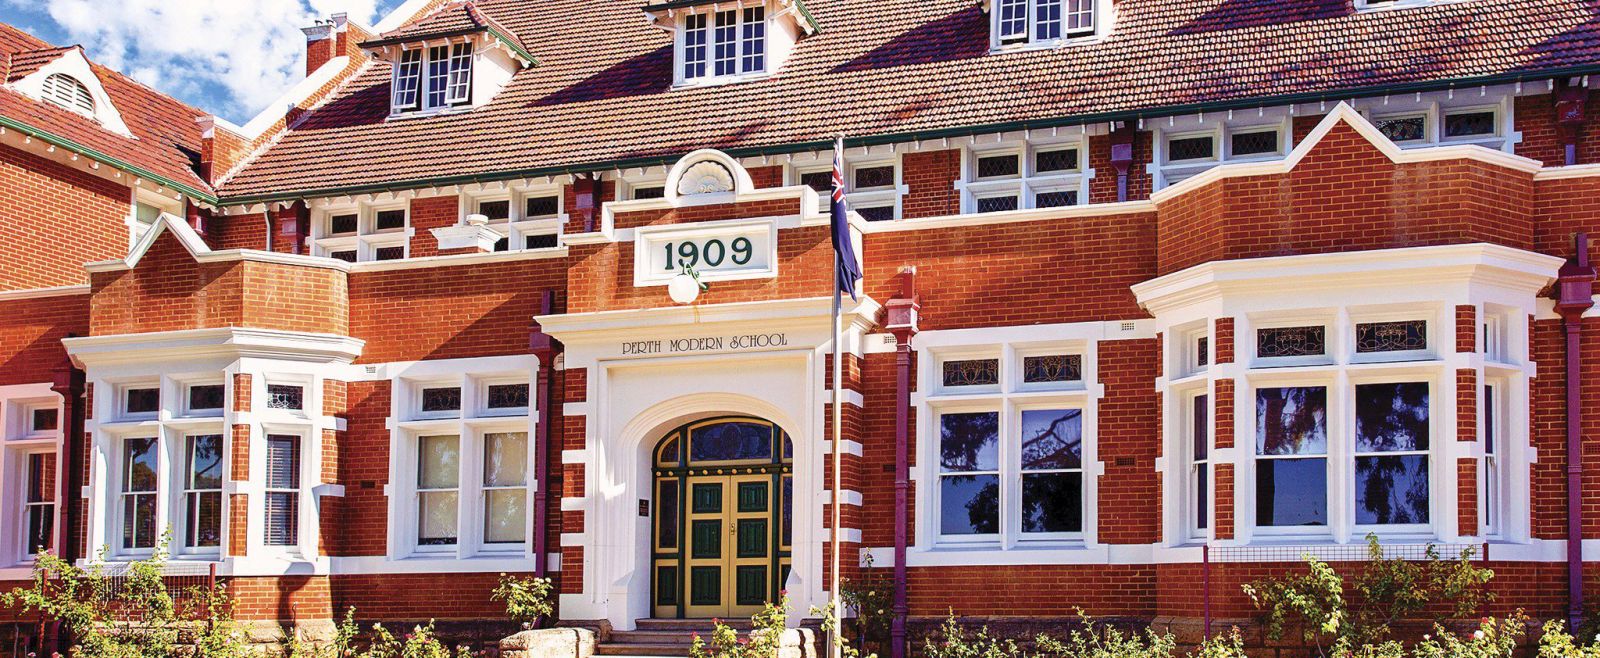 Perth Modern School – Du học Trung học Úc – Trung tâm du học RECCEDU